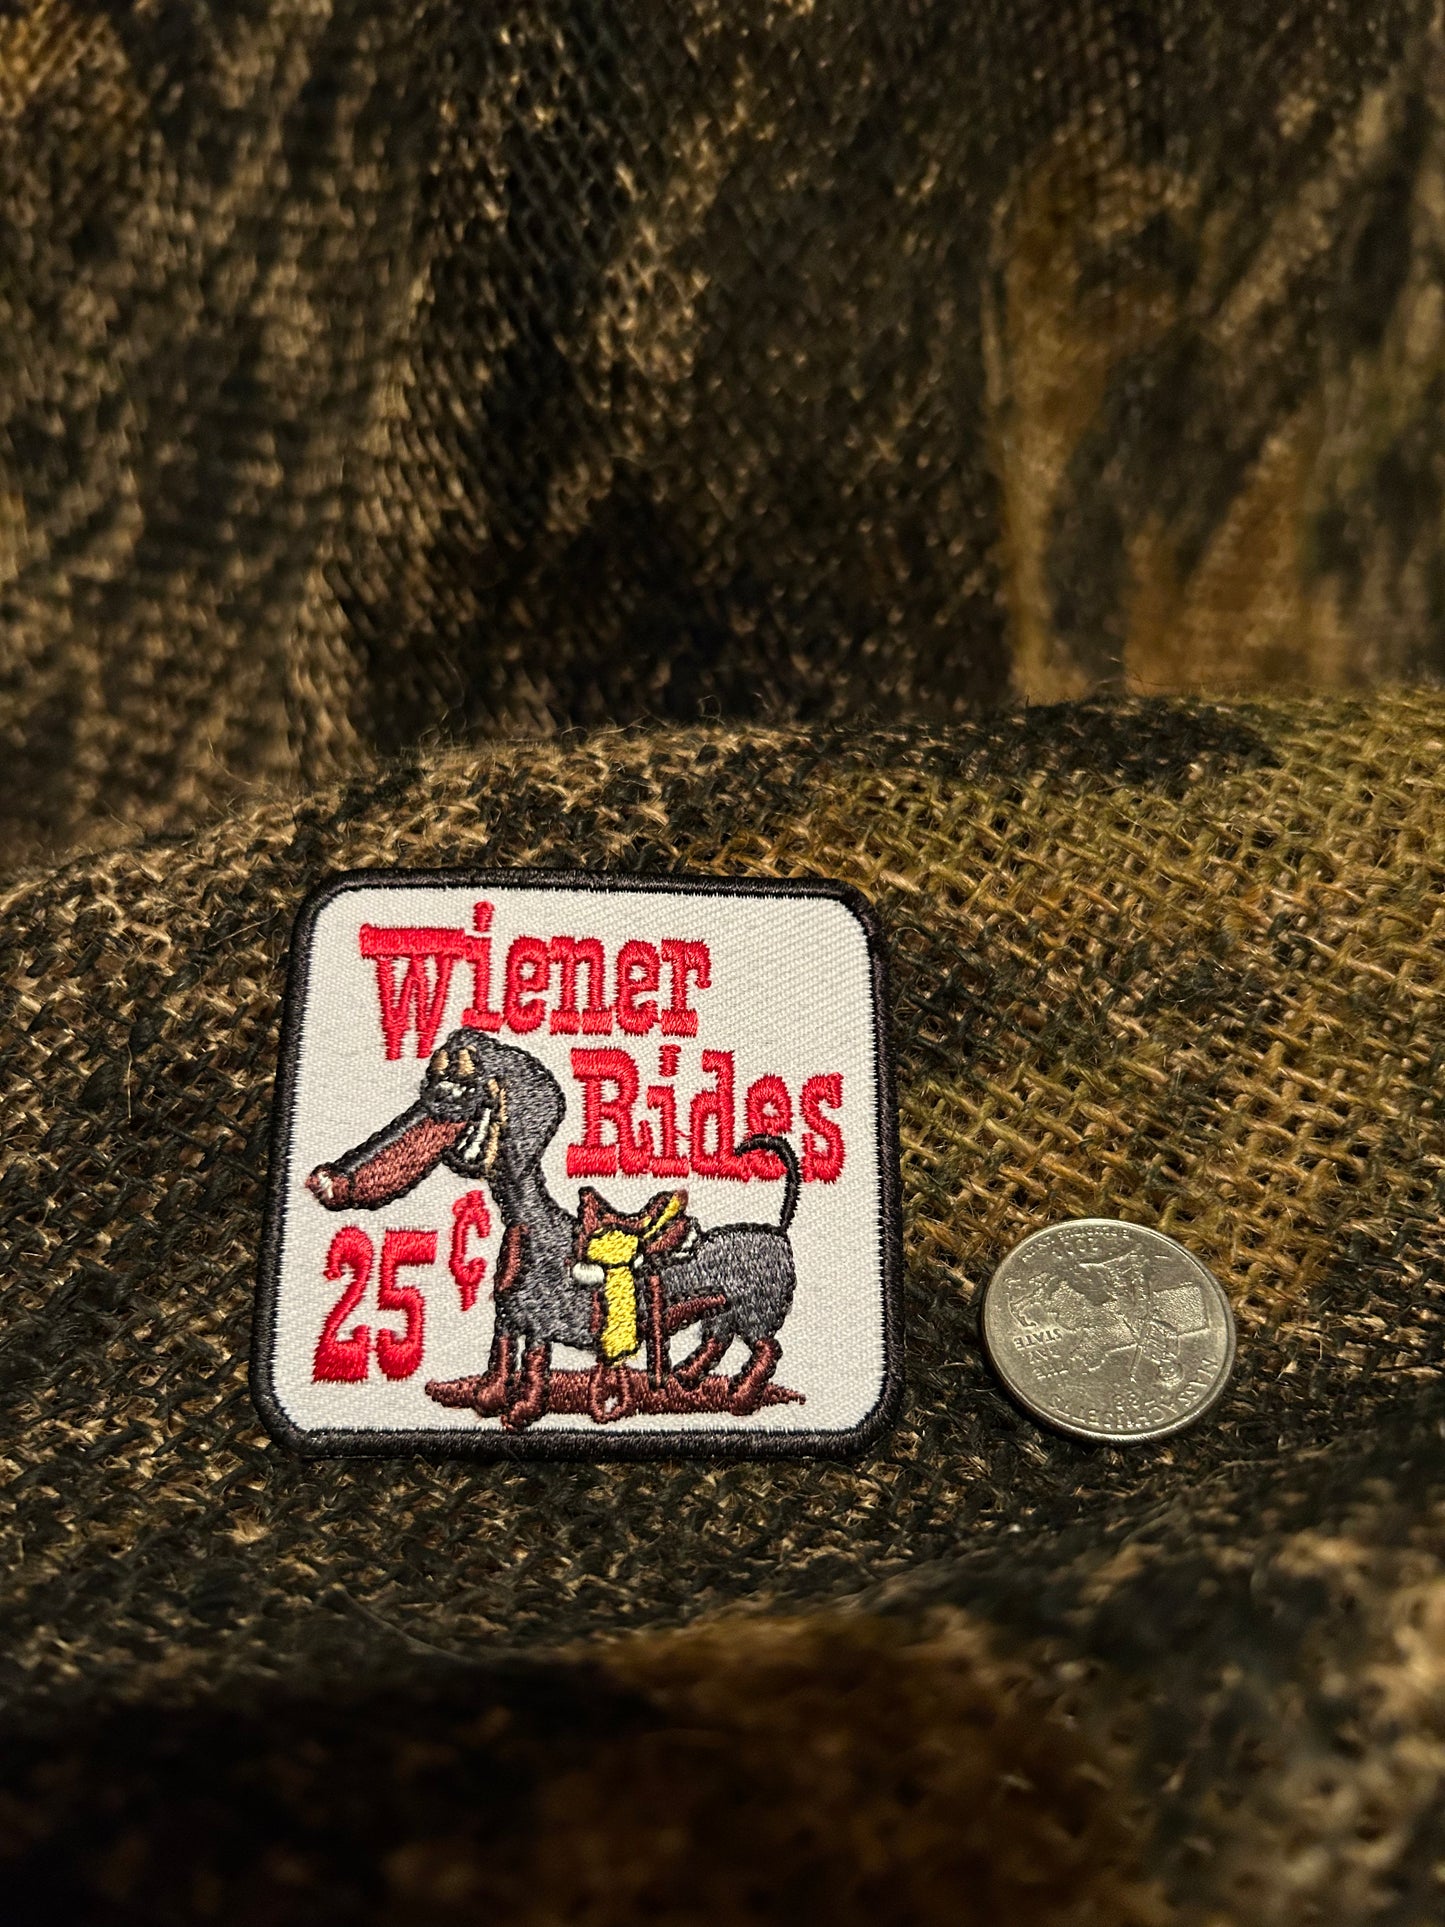 Weiner Rides 25 cent patch